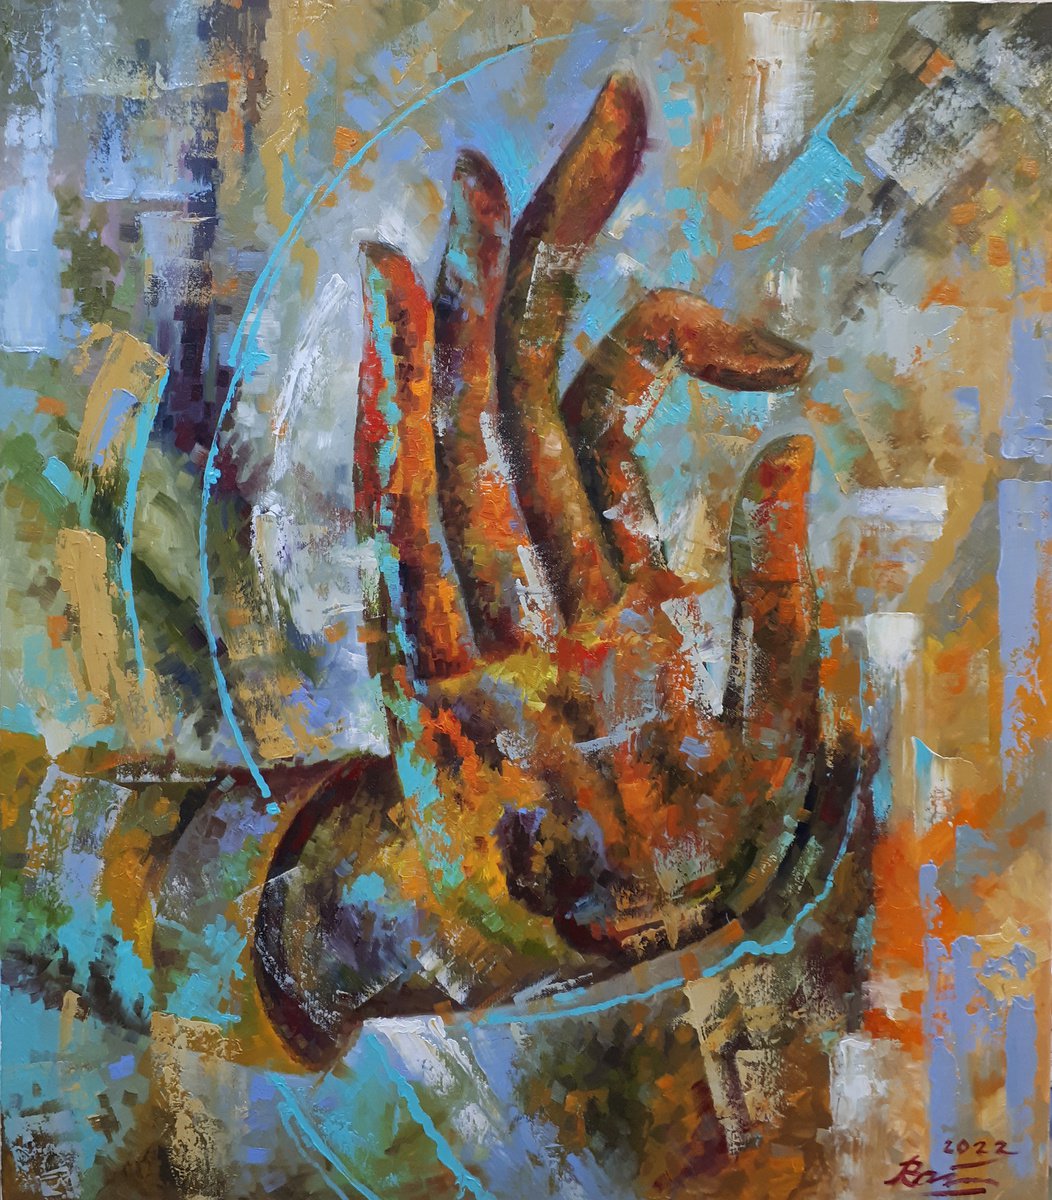 Buddha hand by Serhii Voichenko